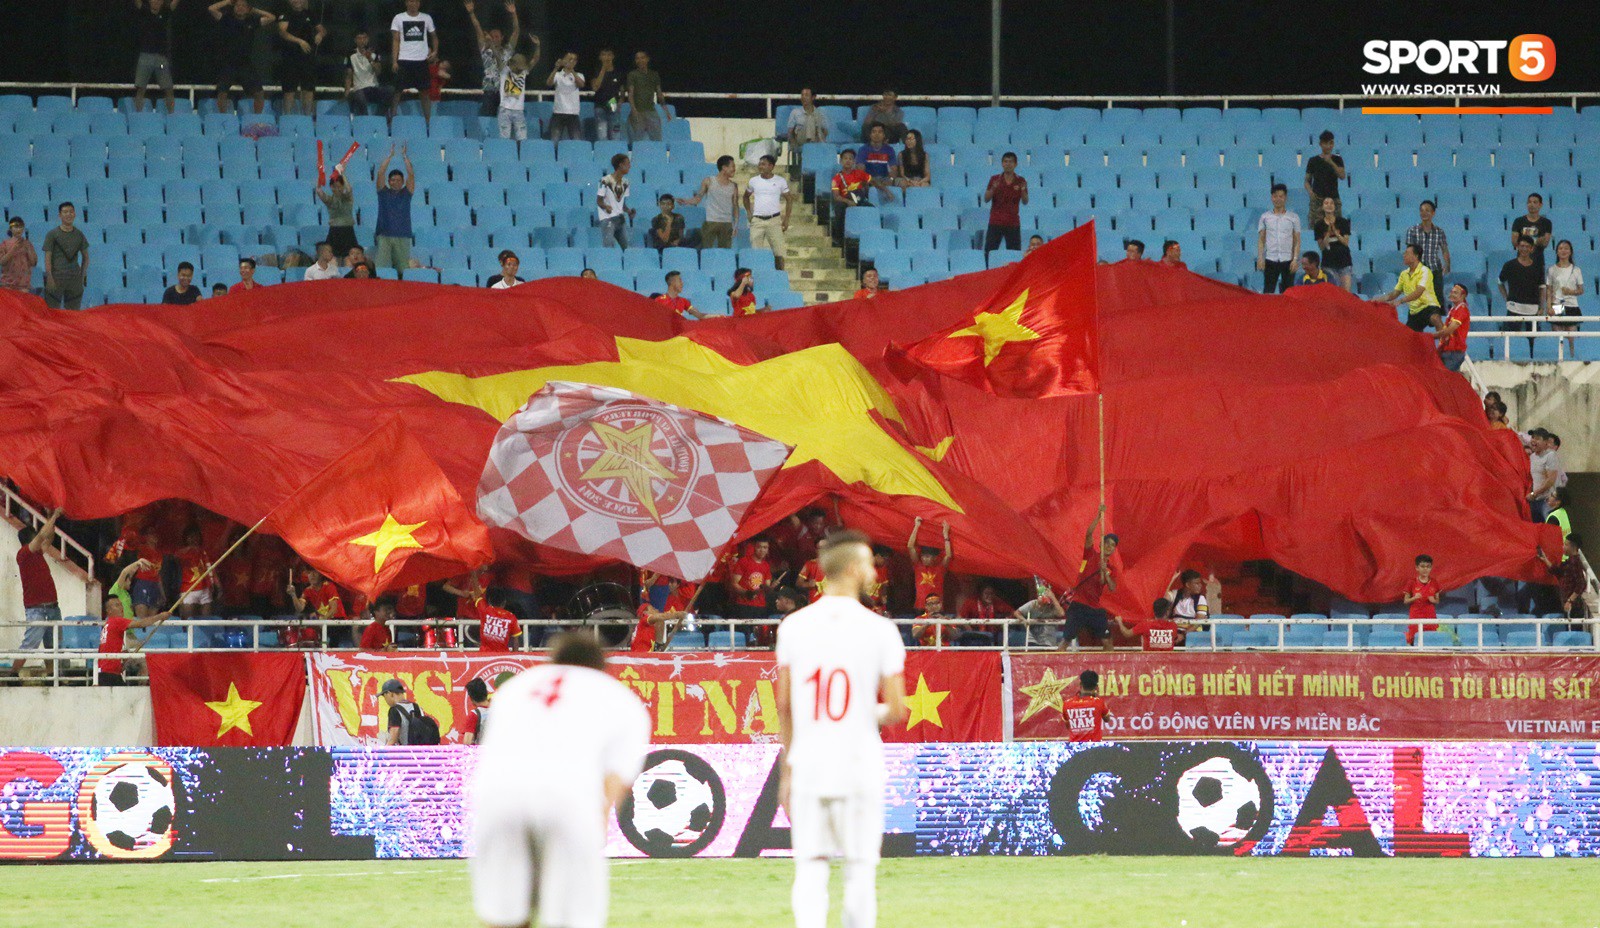 Những điều thú vị bạn có thể đã bỏ qua trên khán đài trong chiến thắng của U23 Việt Nam - Ảnh 11.